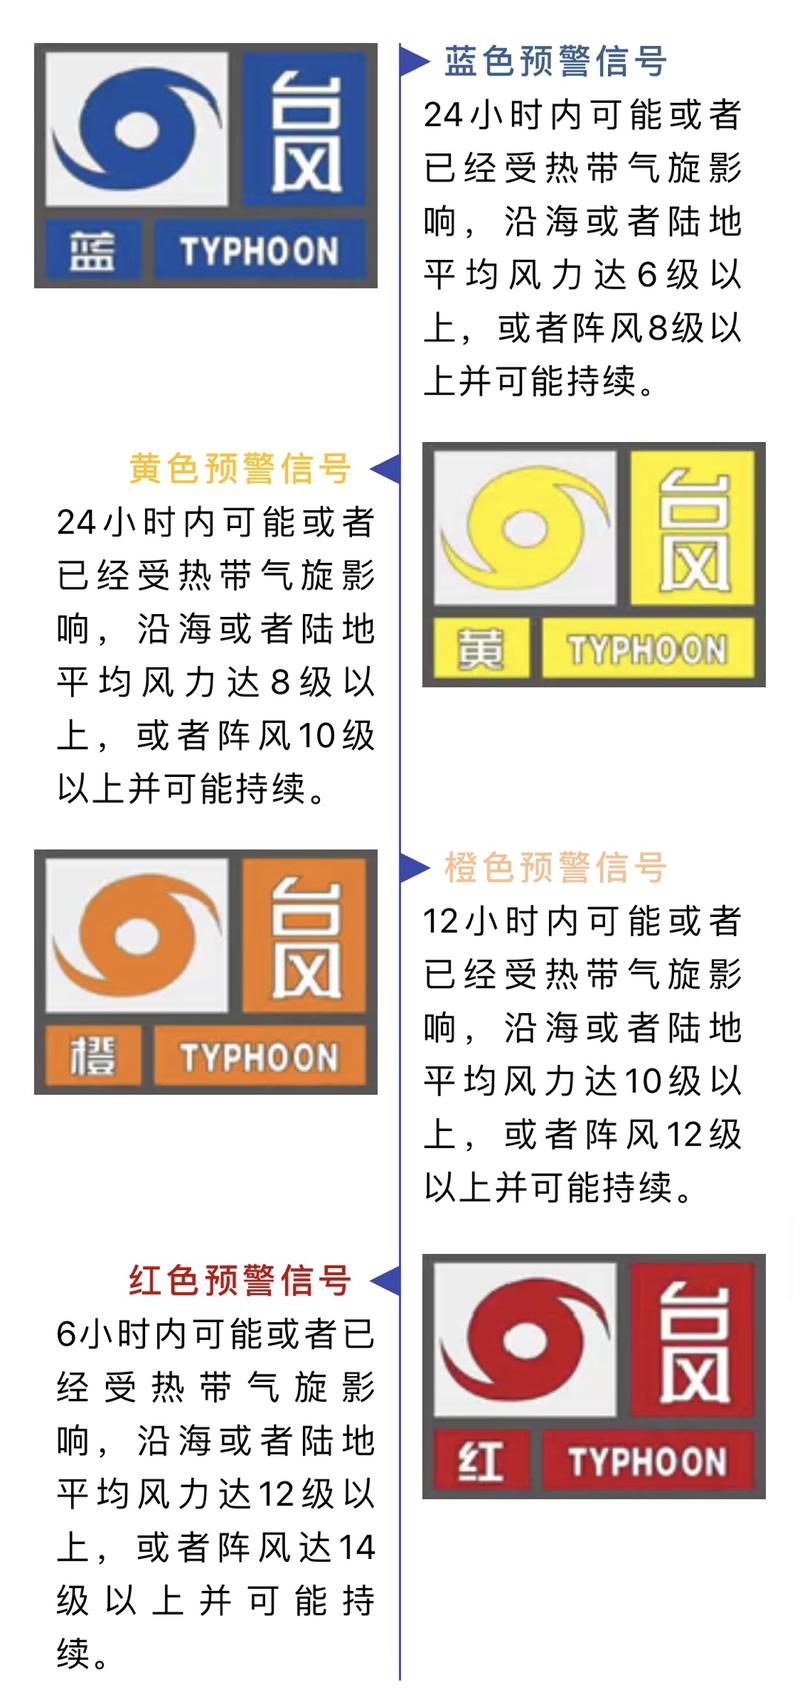 台风预警信号分四级,分别以 蓝色,黄色,橙色和红色表示.